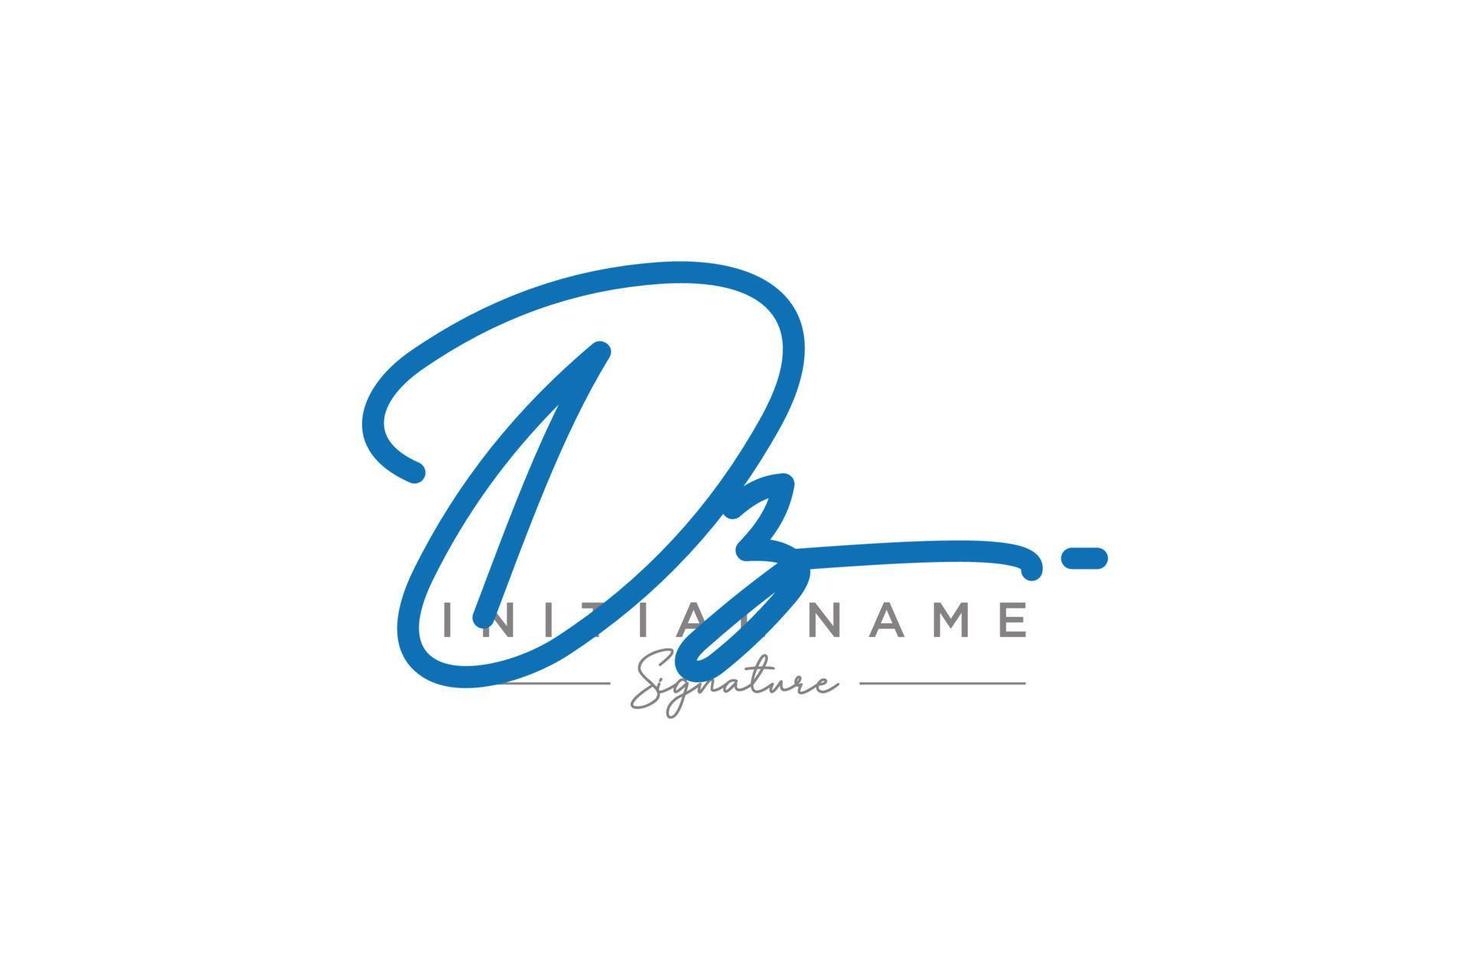 eerste dz handtekening logo sjabloon vector. hand- getrokken schoonschrift belettering vector illustratie.